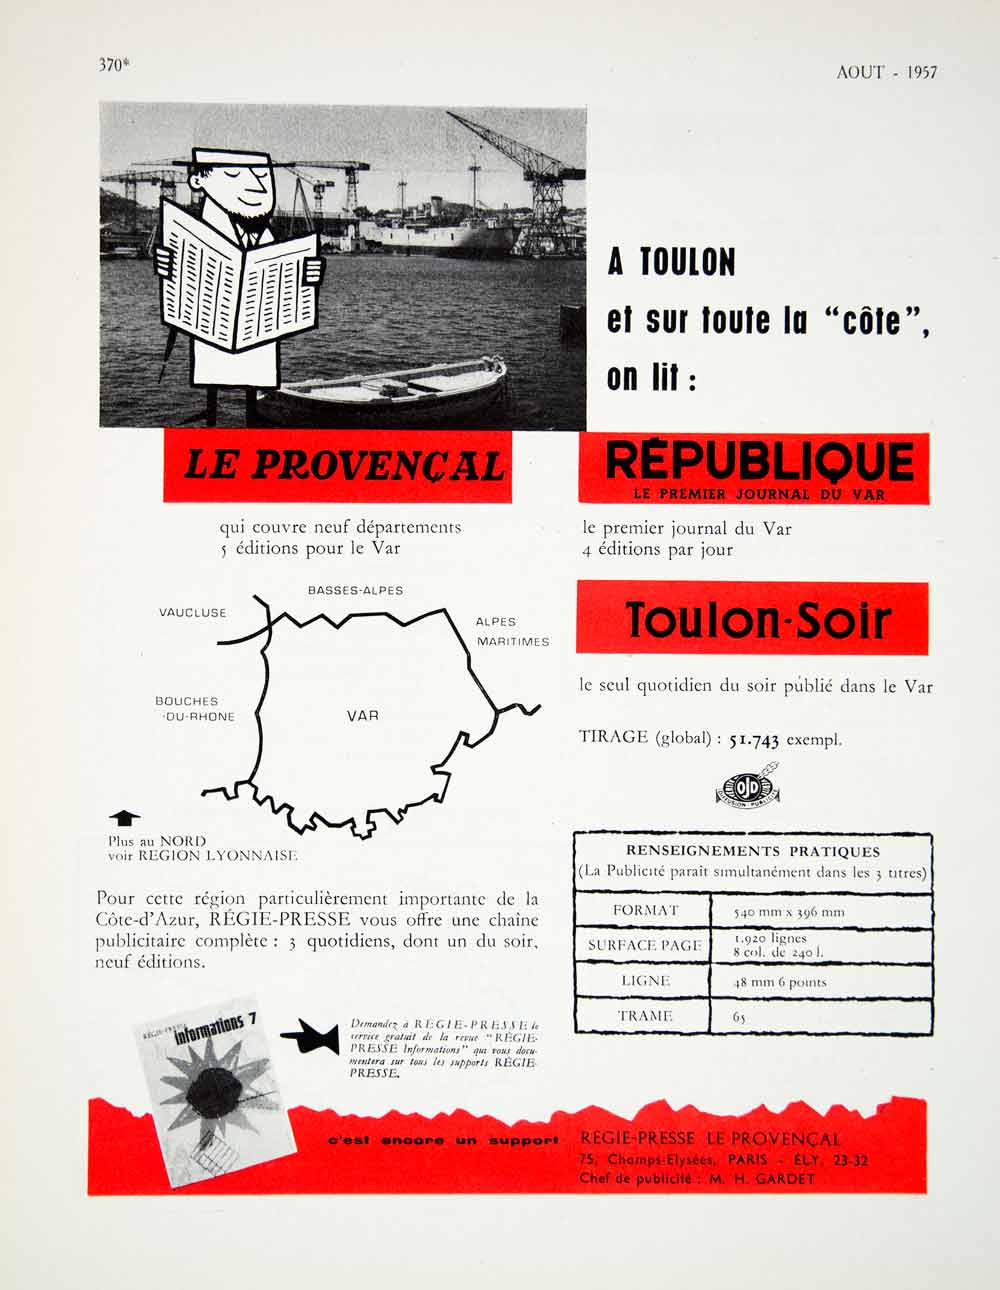 1957 Ad Le Provencal Republique Toulon-Soir Regie-Presse French VENA6